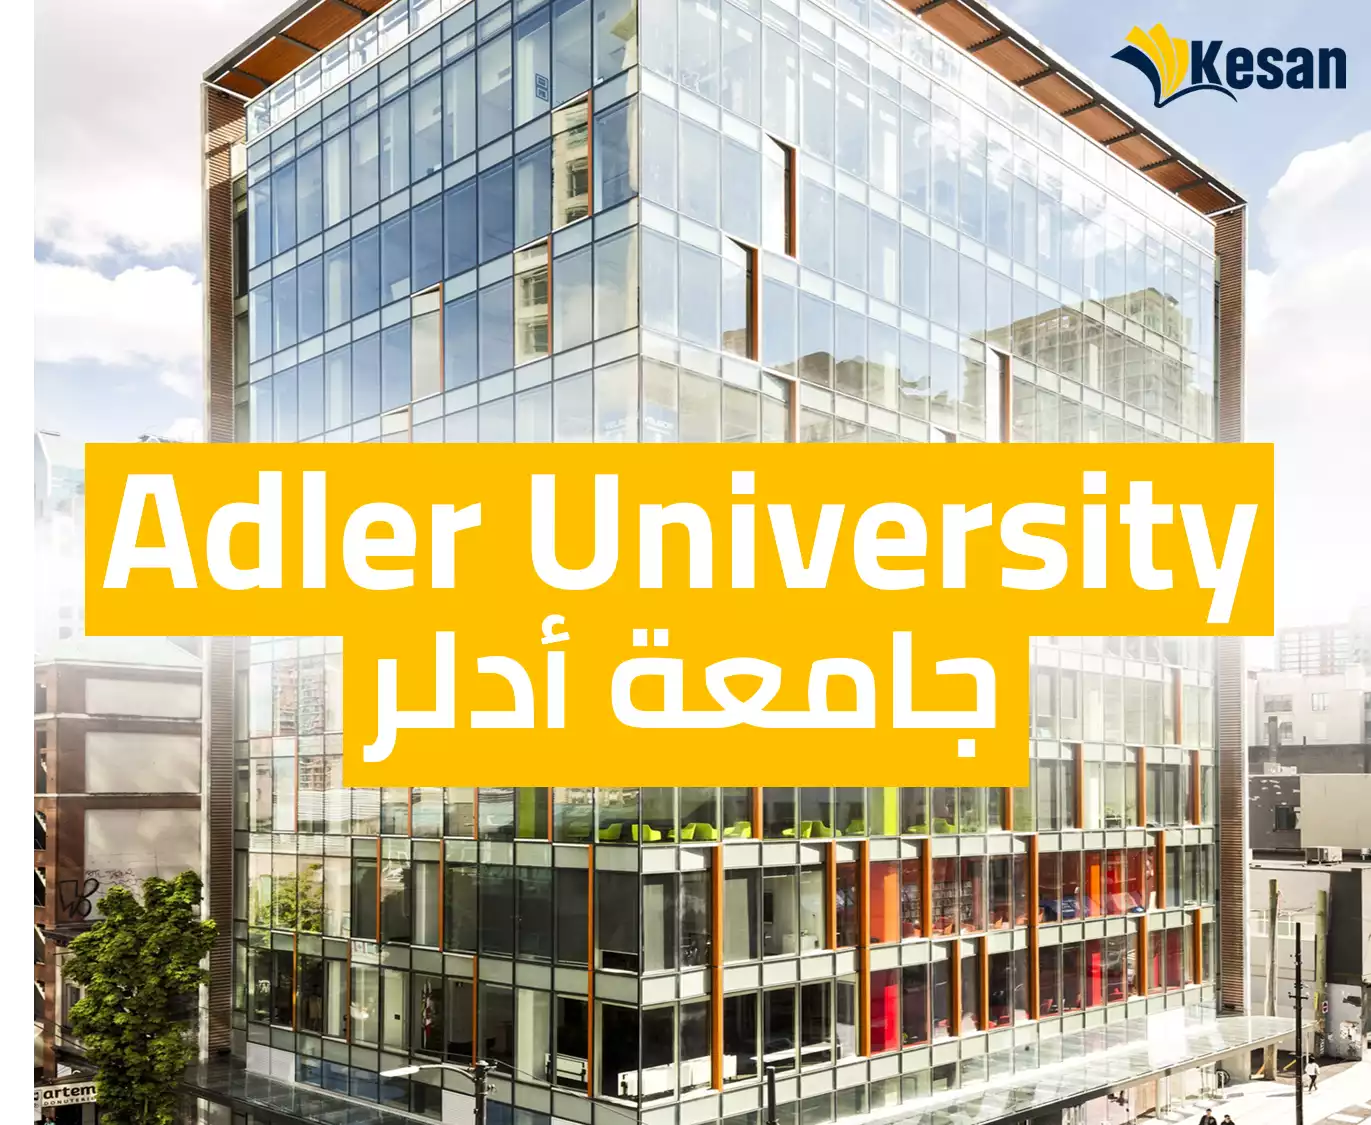 جامعة أدلر – Adler University